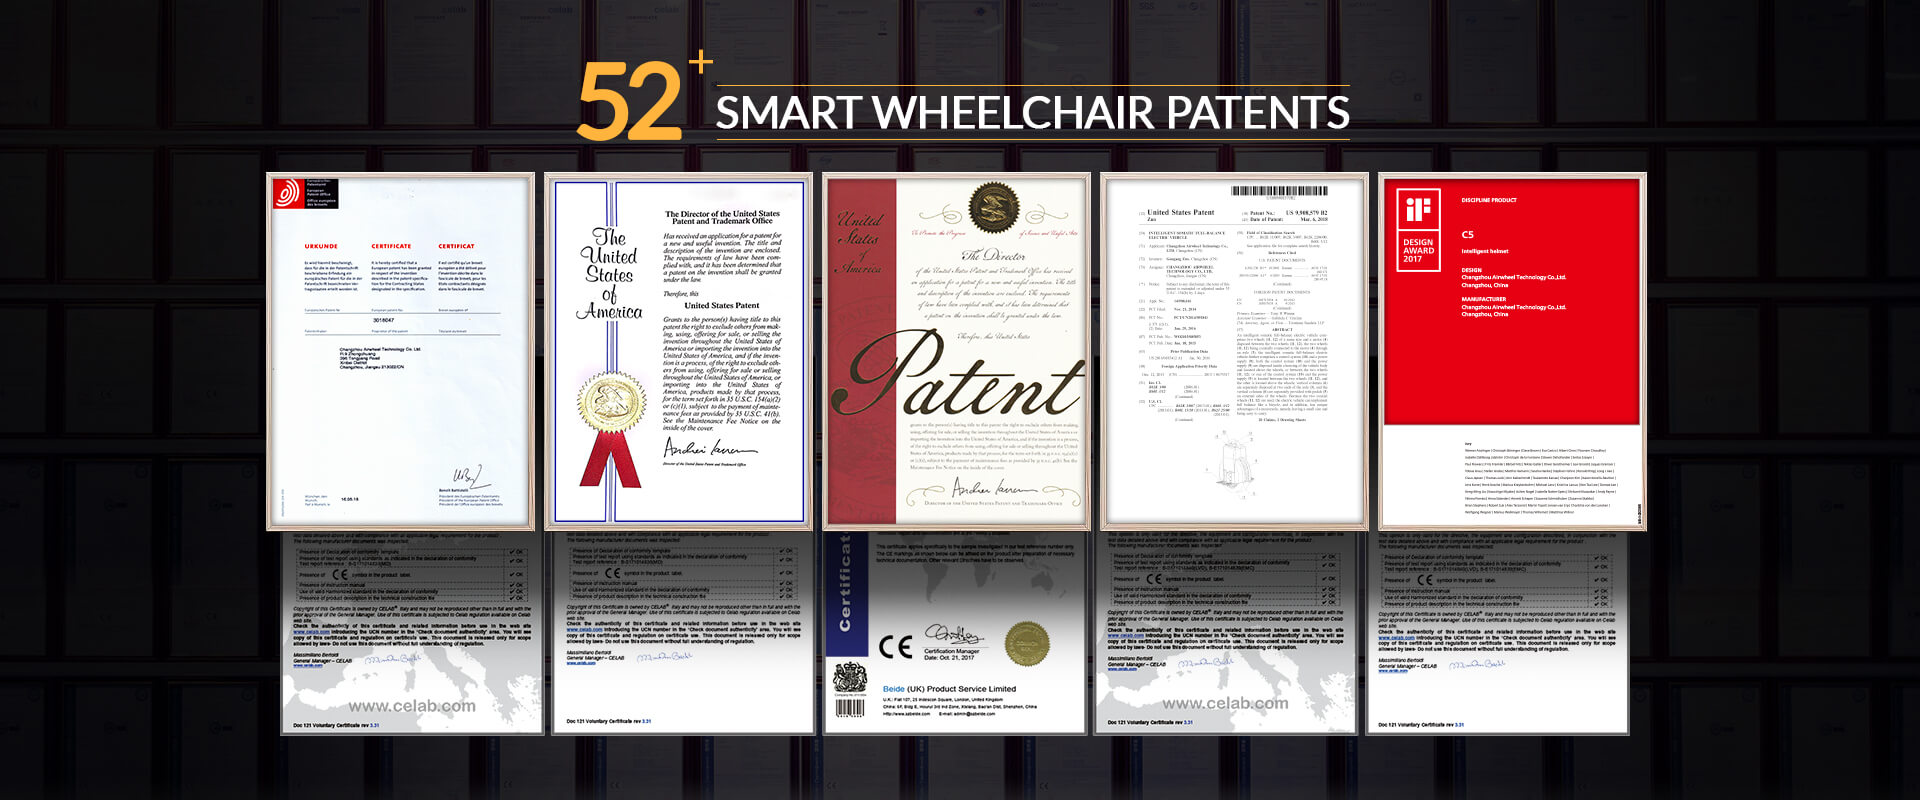 Airwheel Wheelchair Patents